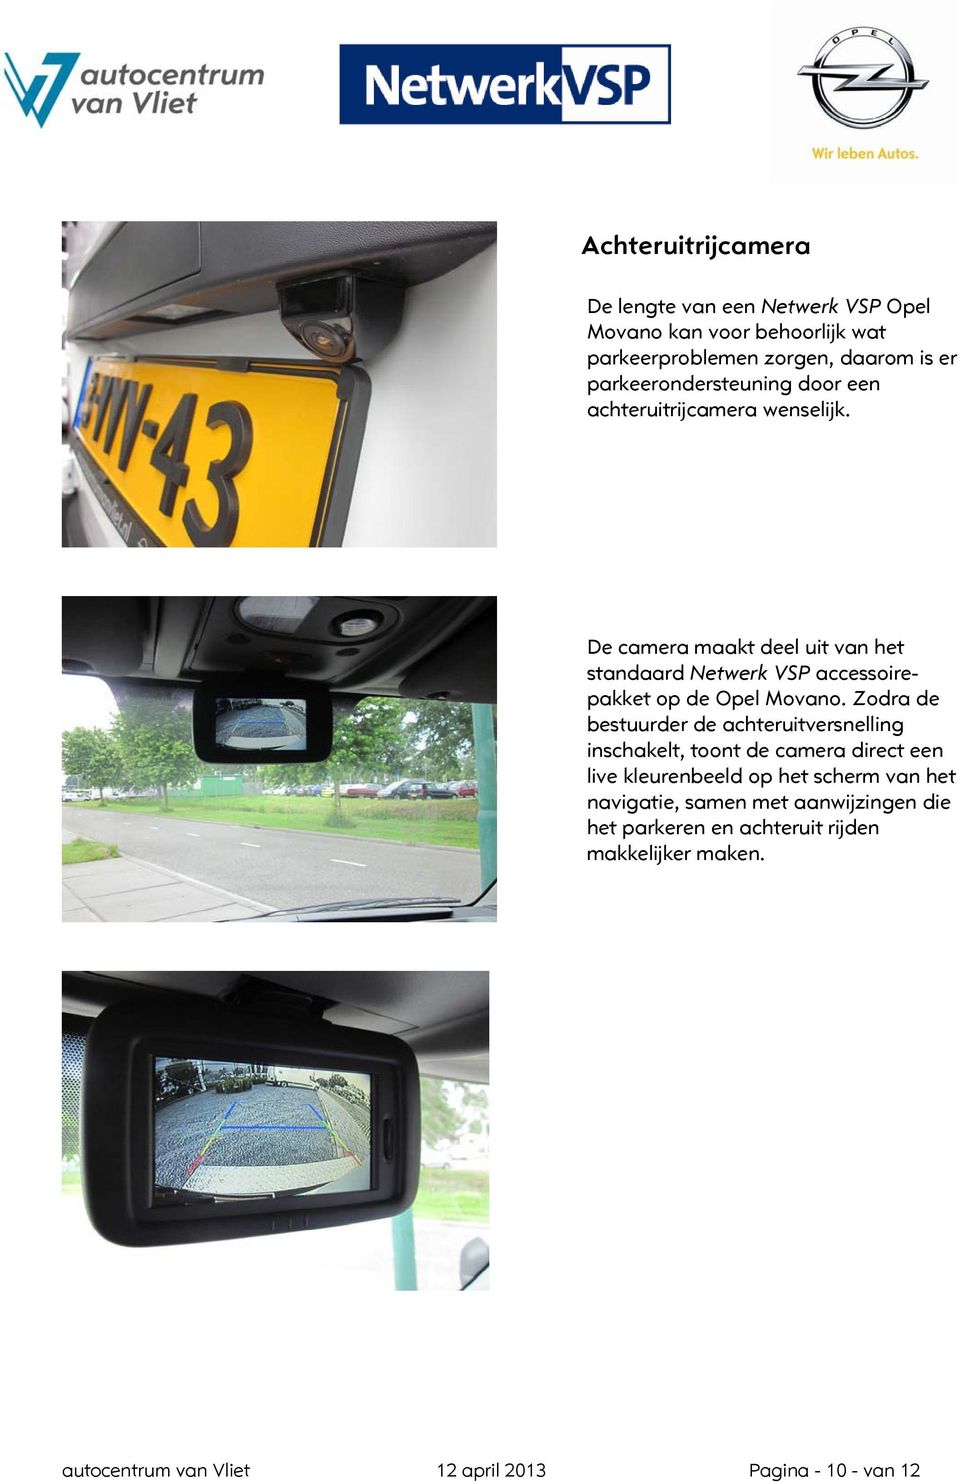 De camera maakt deel uit van het standaard Netwerk VSP accessoirepakket op de Opel Movano.